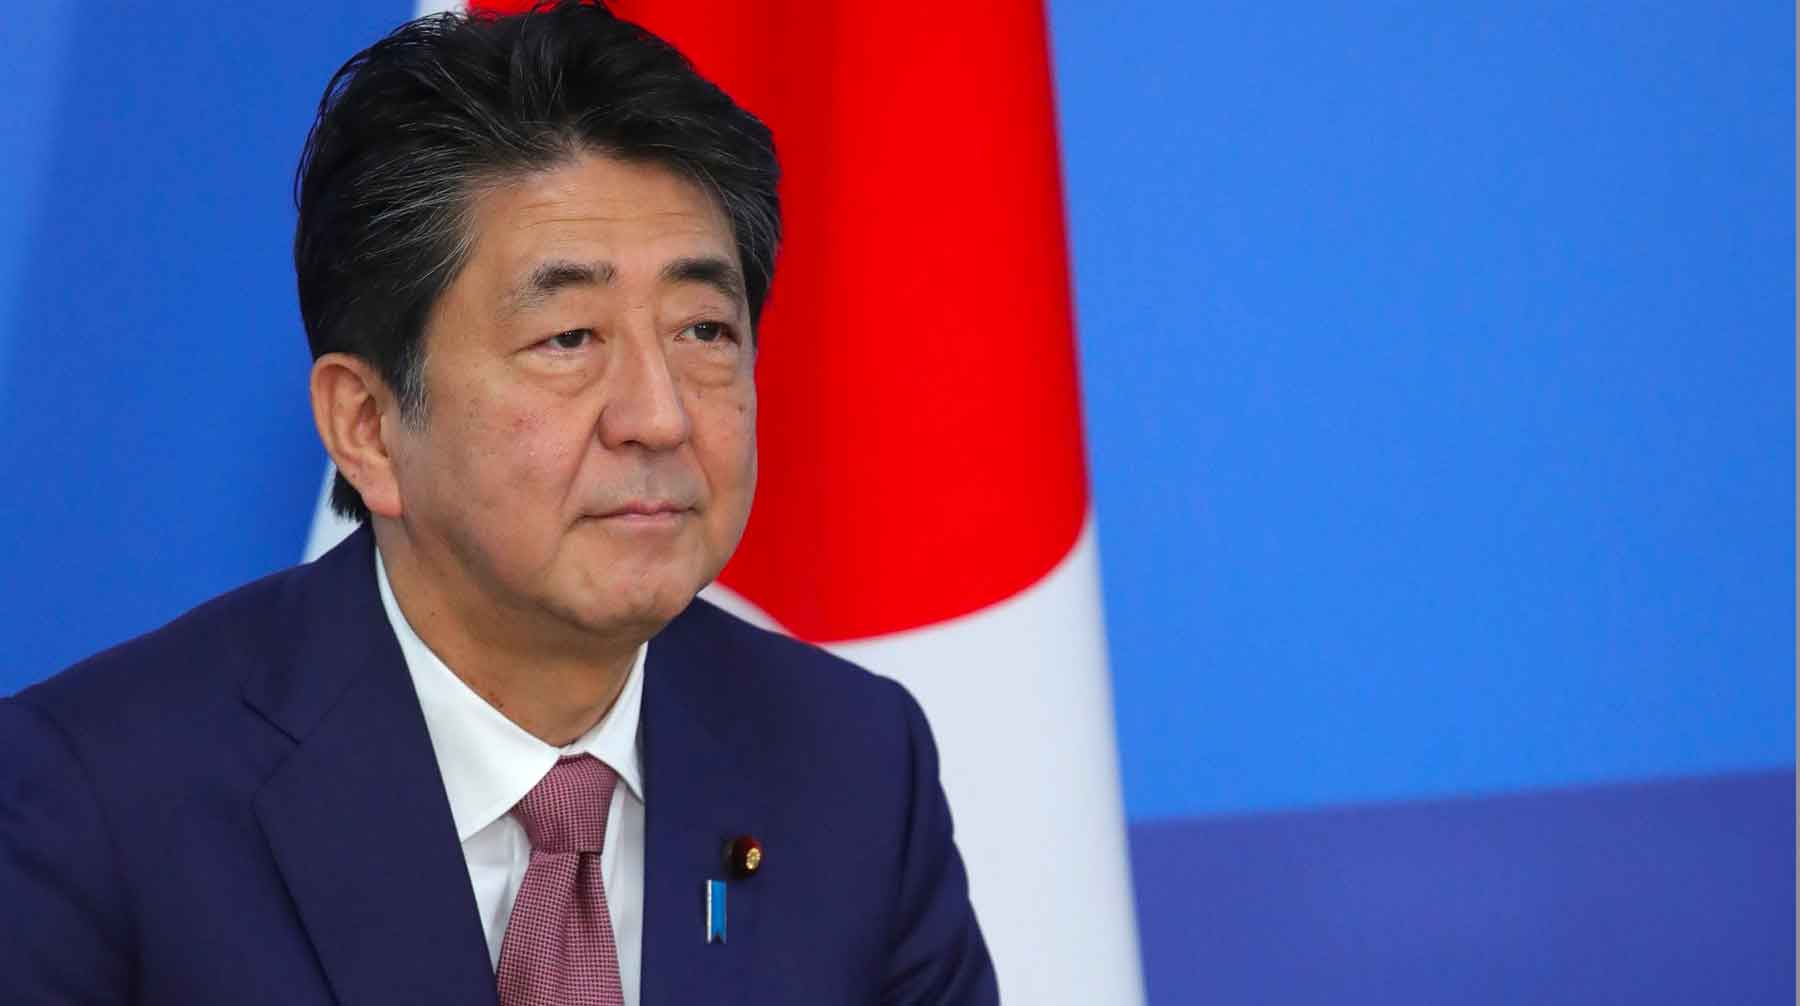 После определения принадлежности островов страны сделают новый шаг в диалоге, заявил премьер-министр Японии Фото: © GLOBAL LOOK press / Kremlin Pool